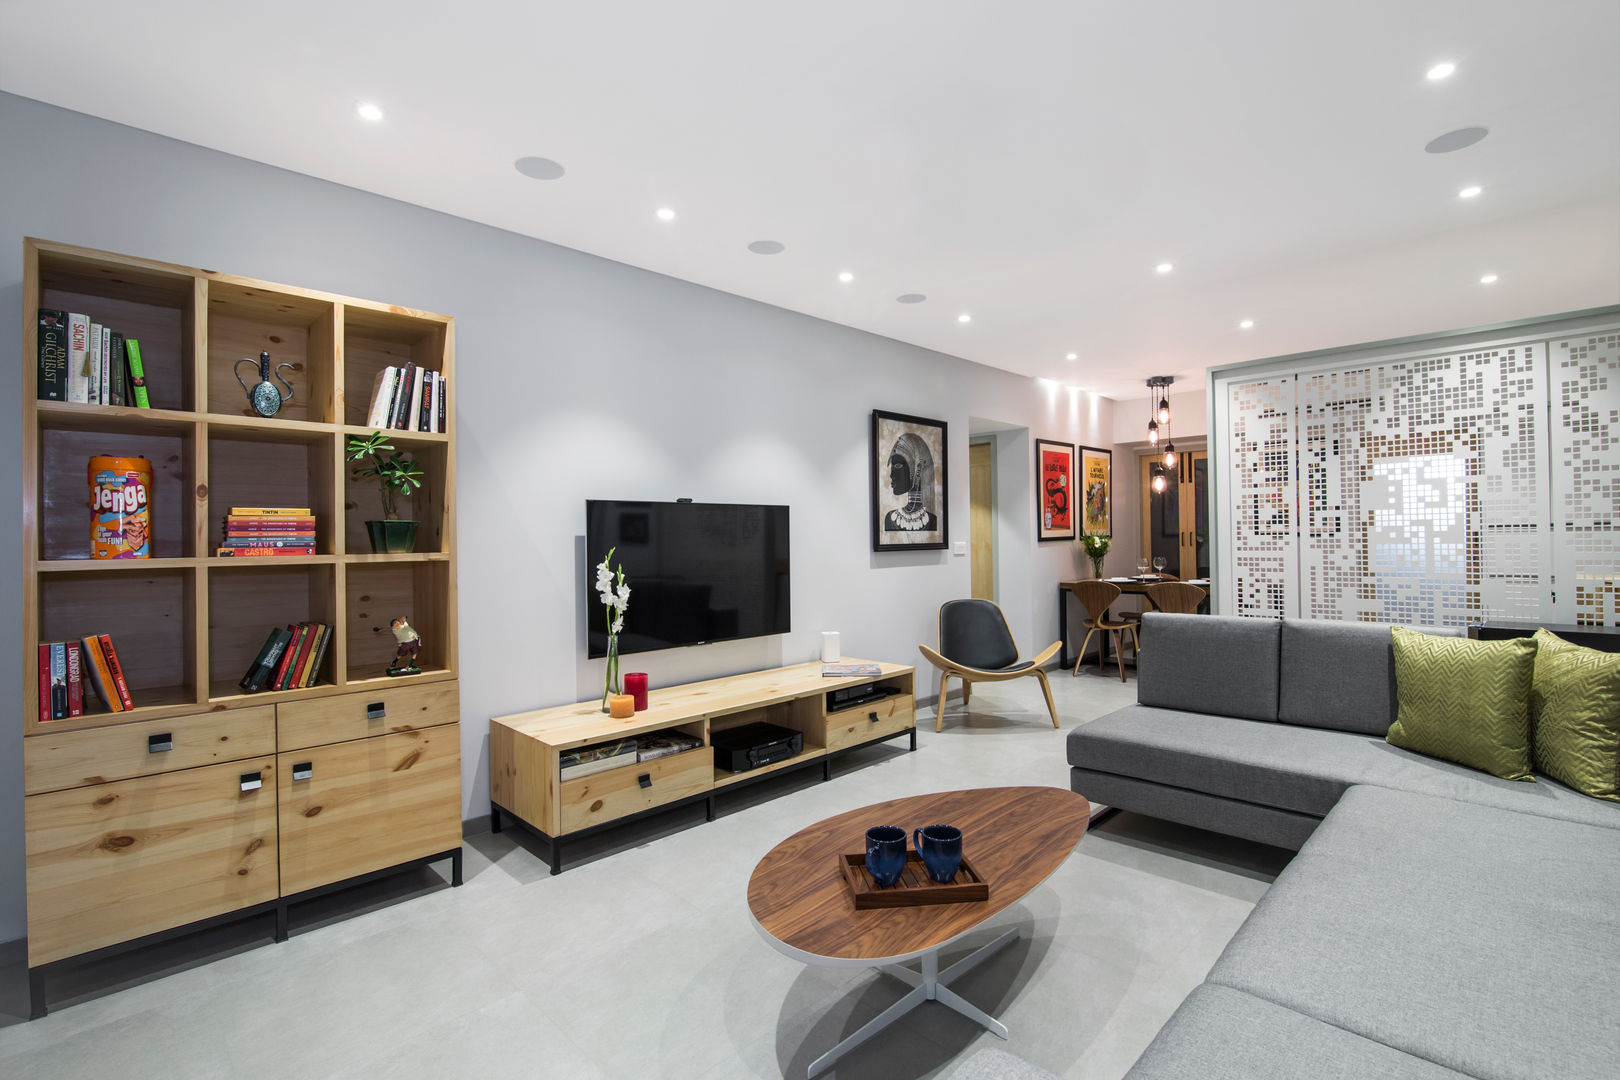 Residential - Lower Parel, Nitido Interior design Nitido Interior design Salas de estilo moderno Azulejos Muebles para televisión y equipos